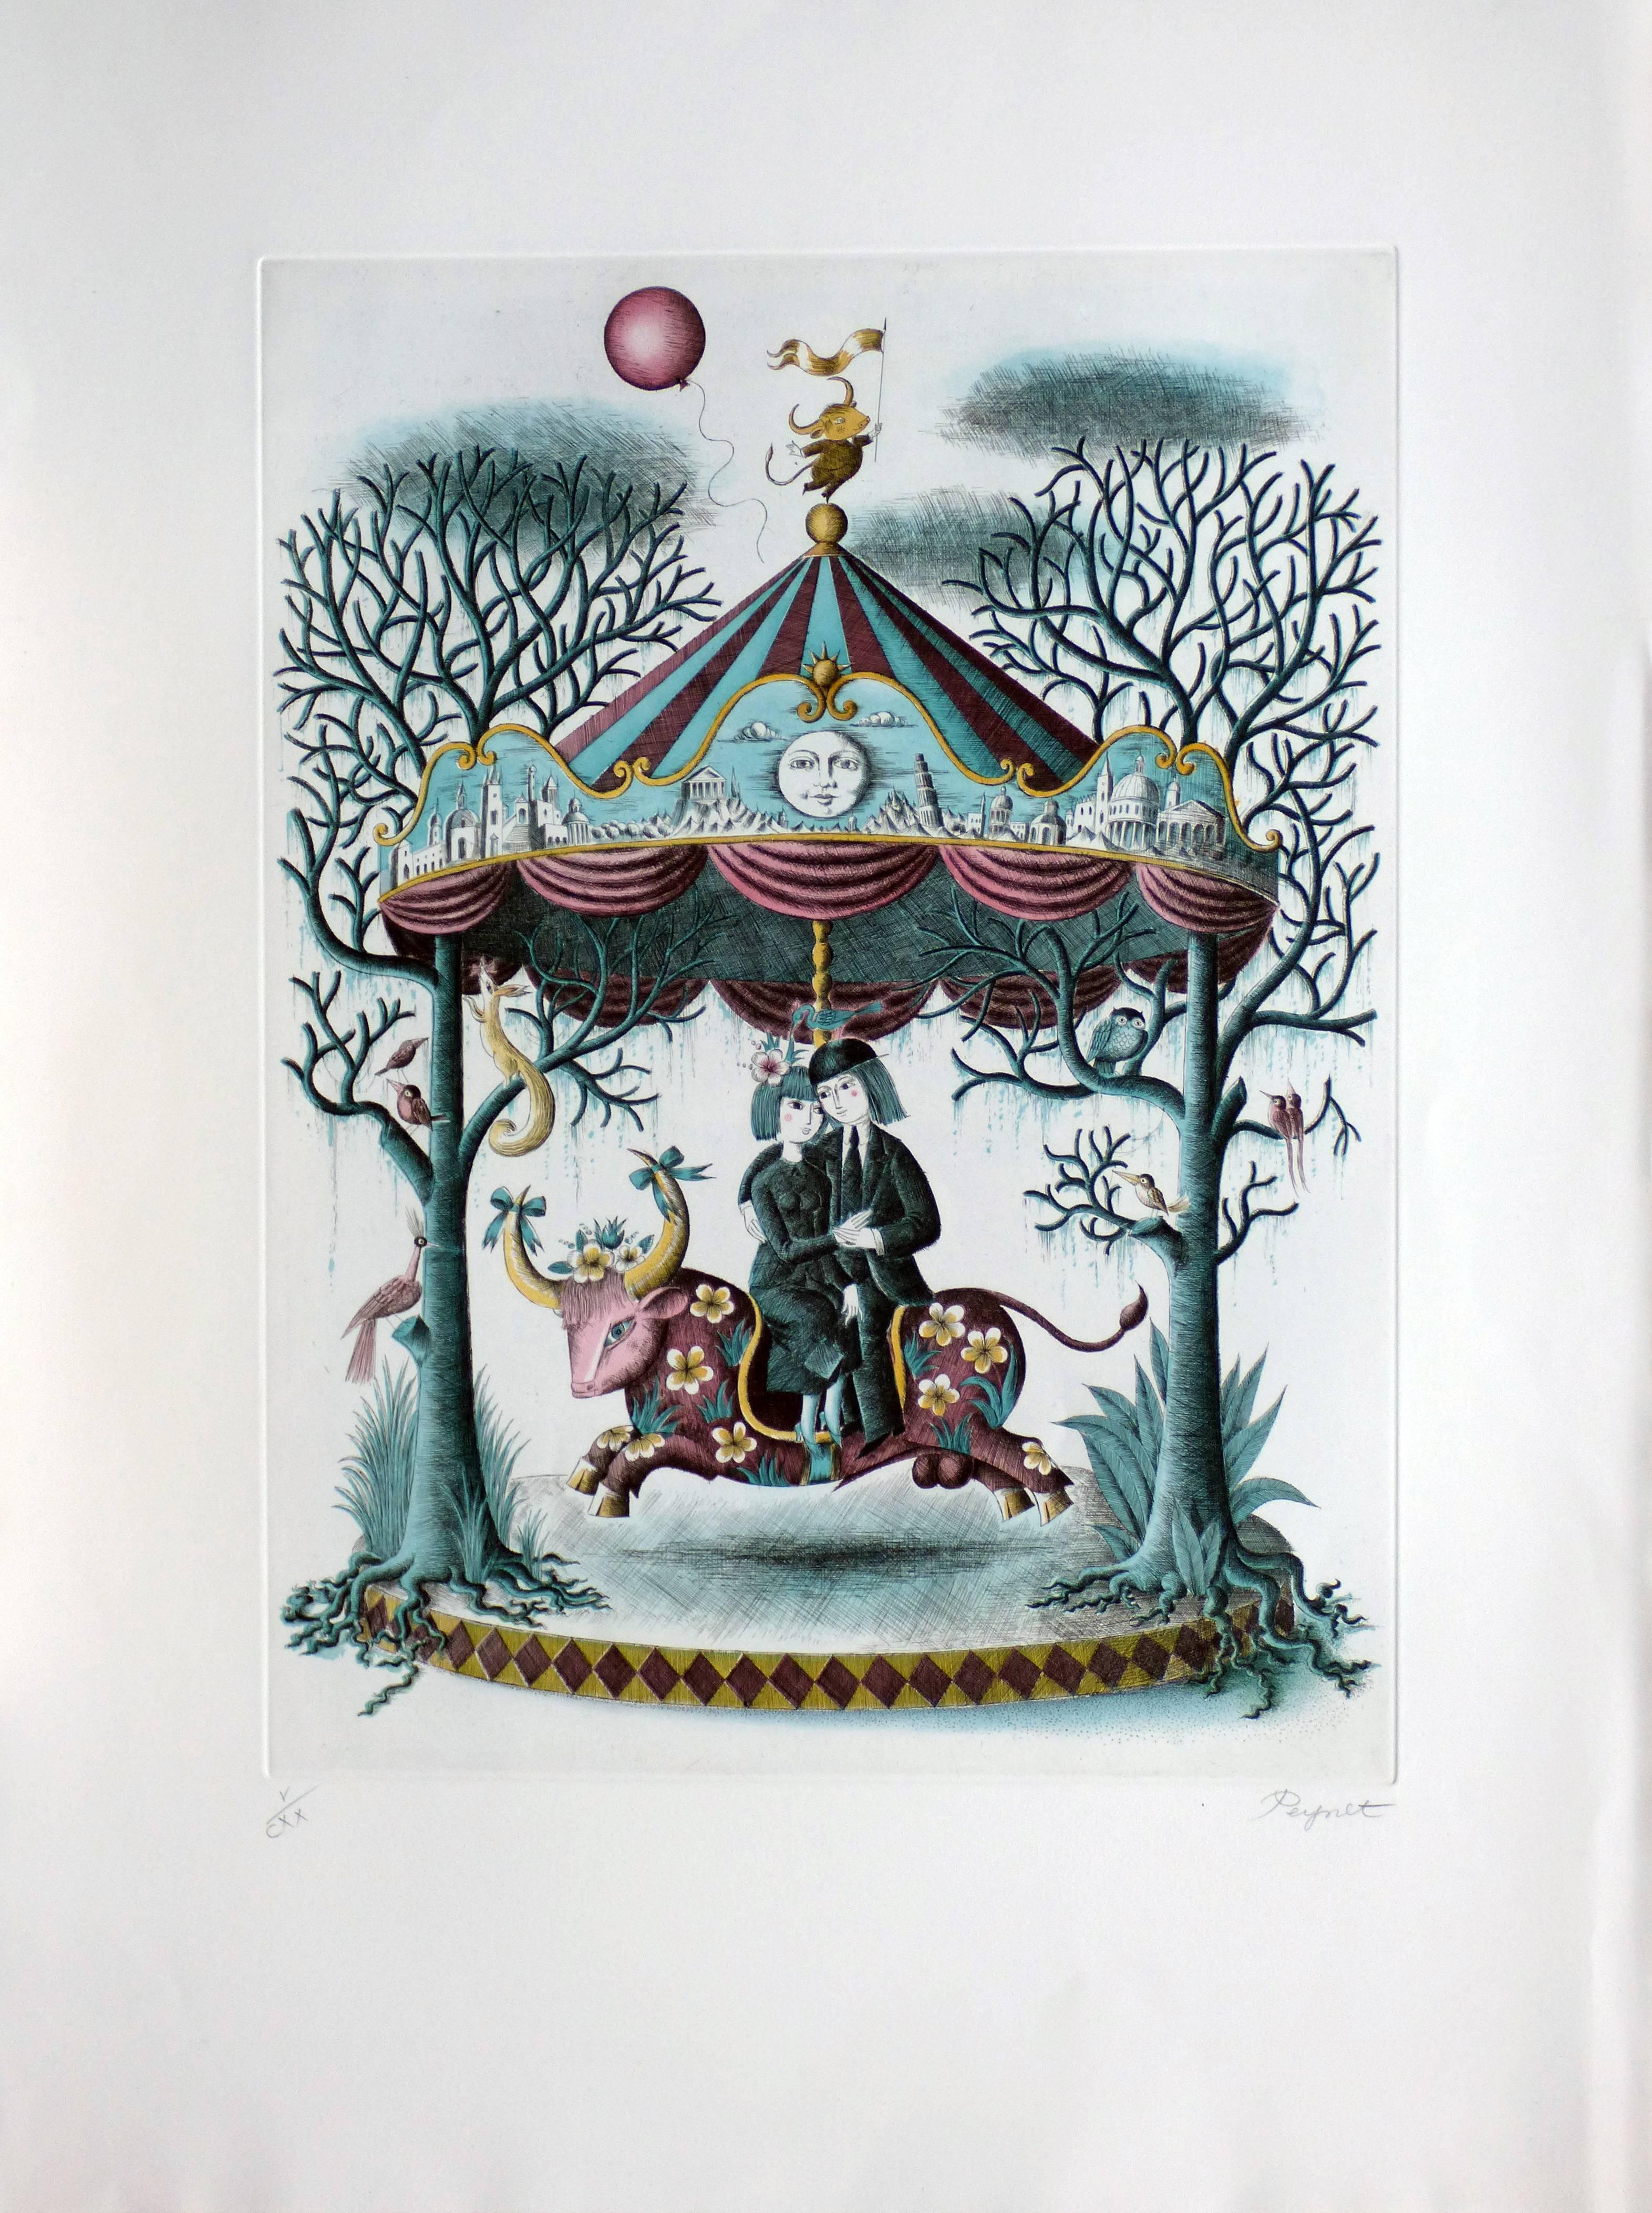 L'amateur, le taureau et le carrousel - Print de Raymond Peynet